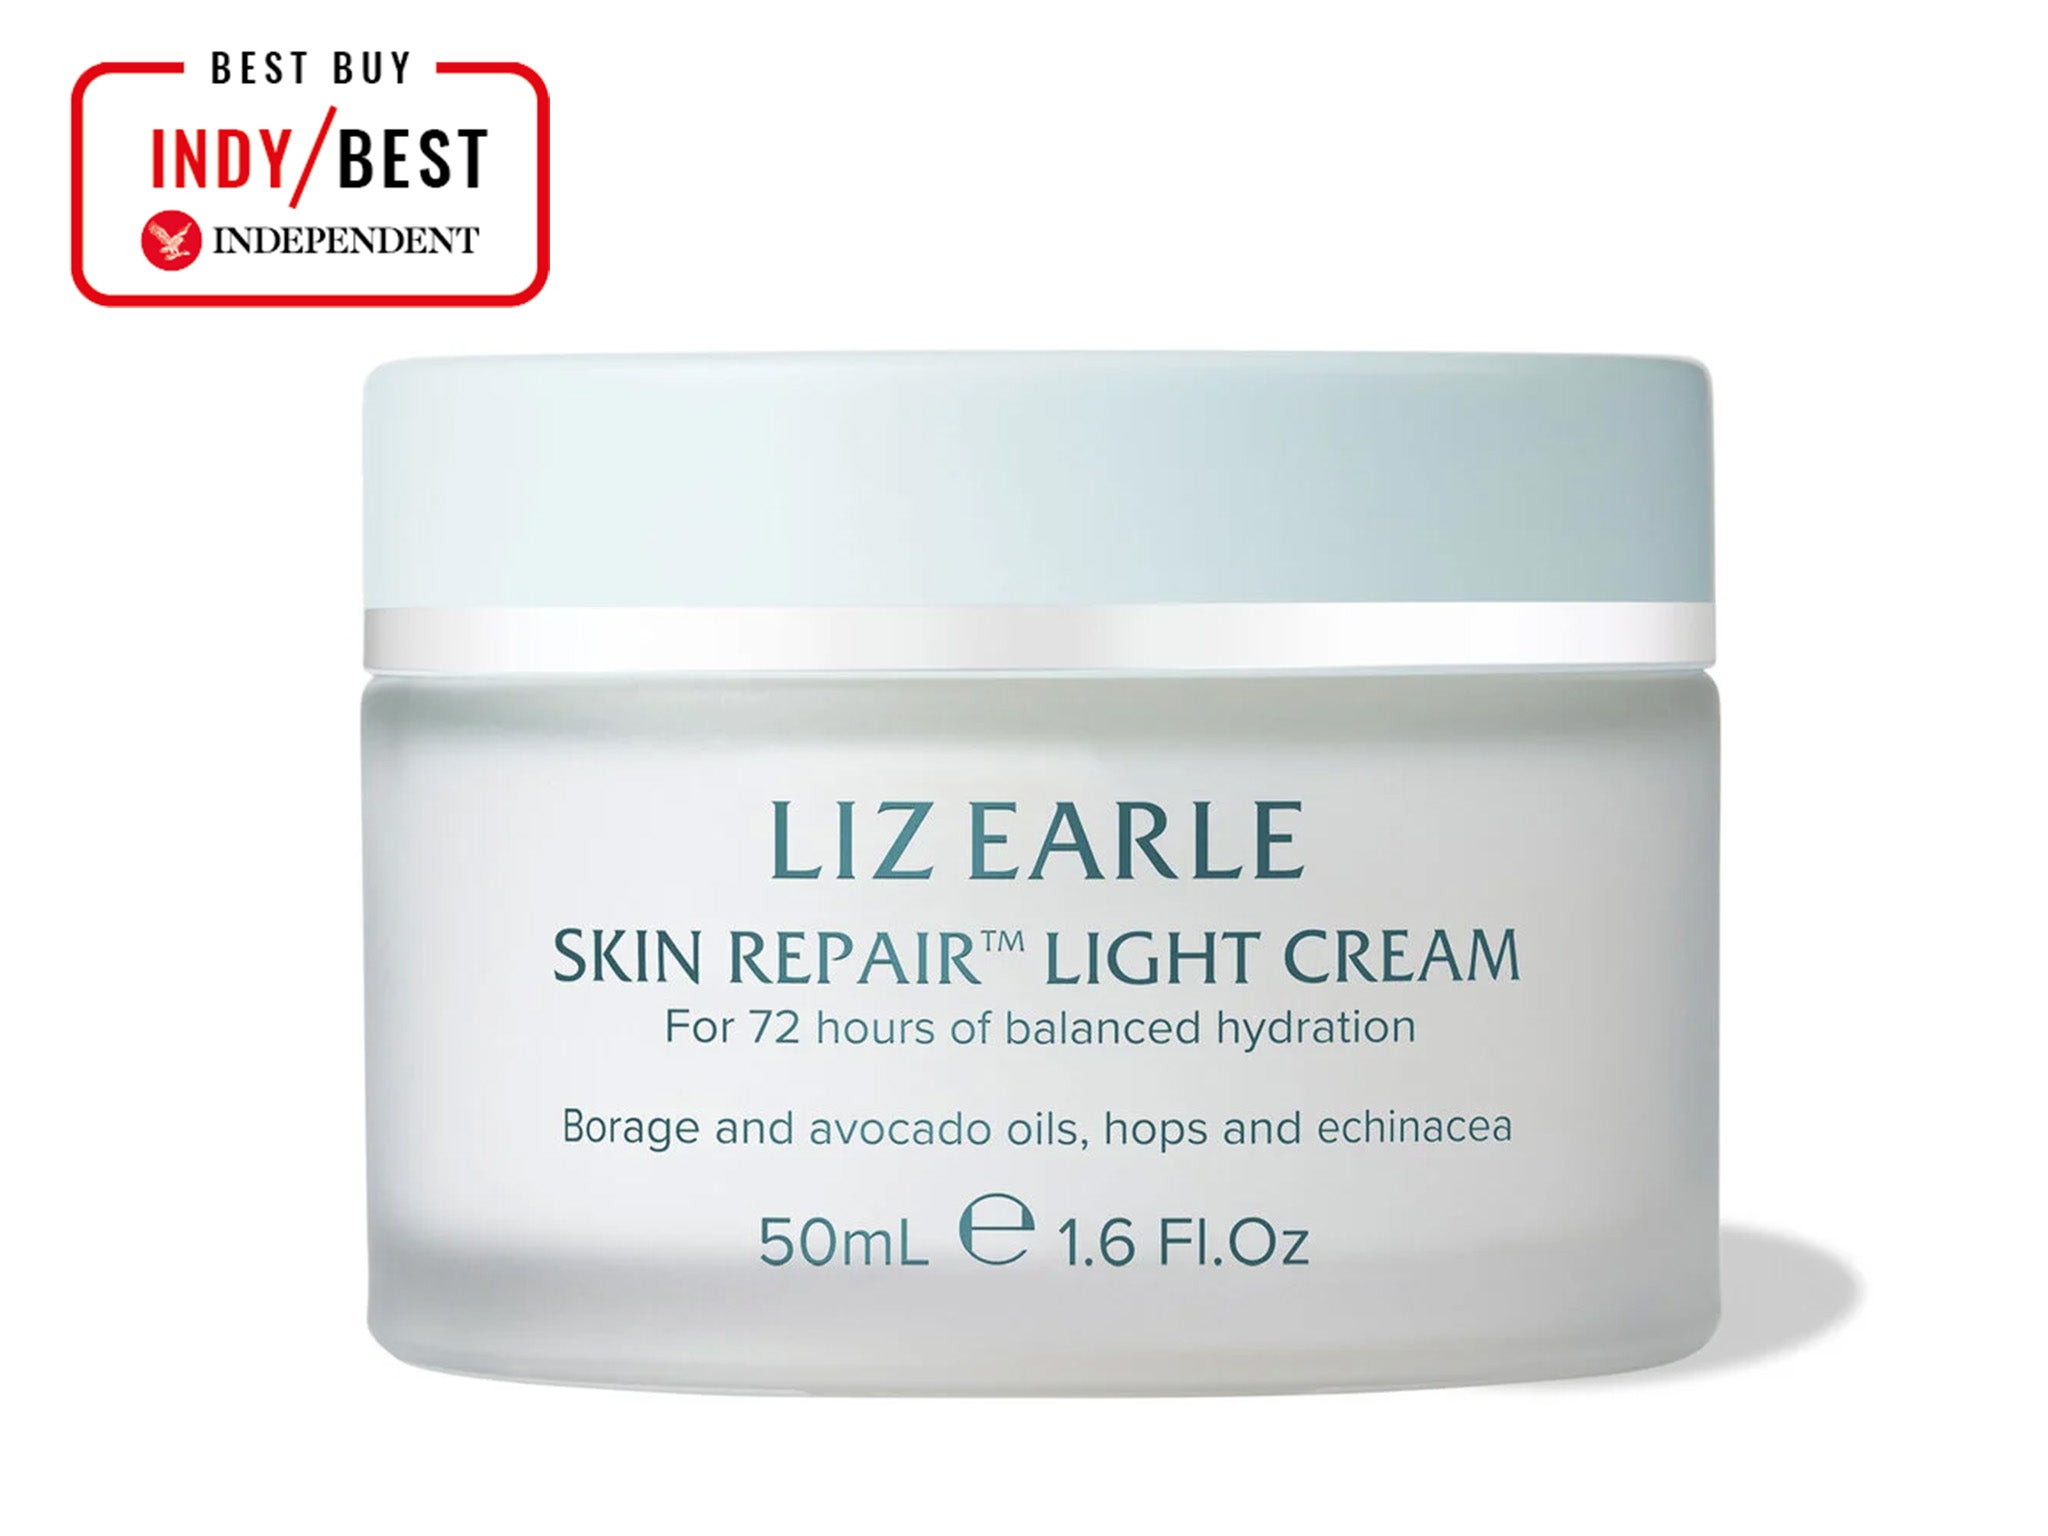 Liz Earle skin repair light cream